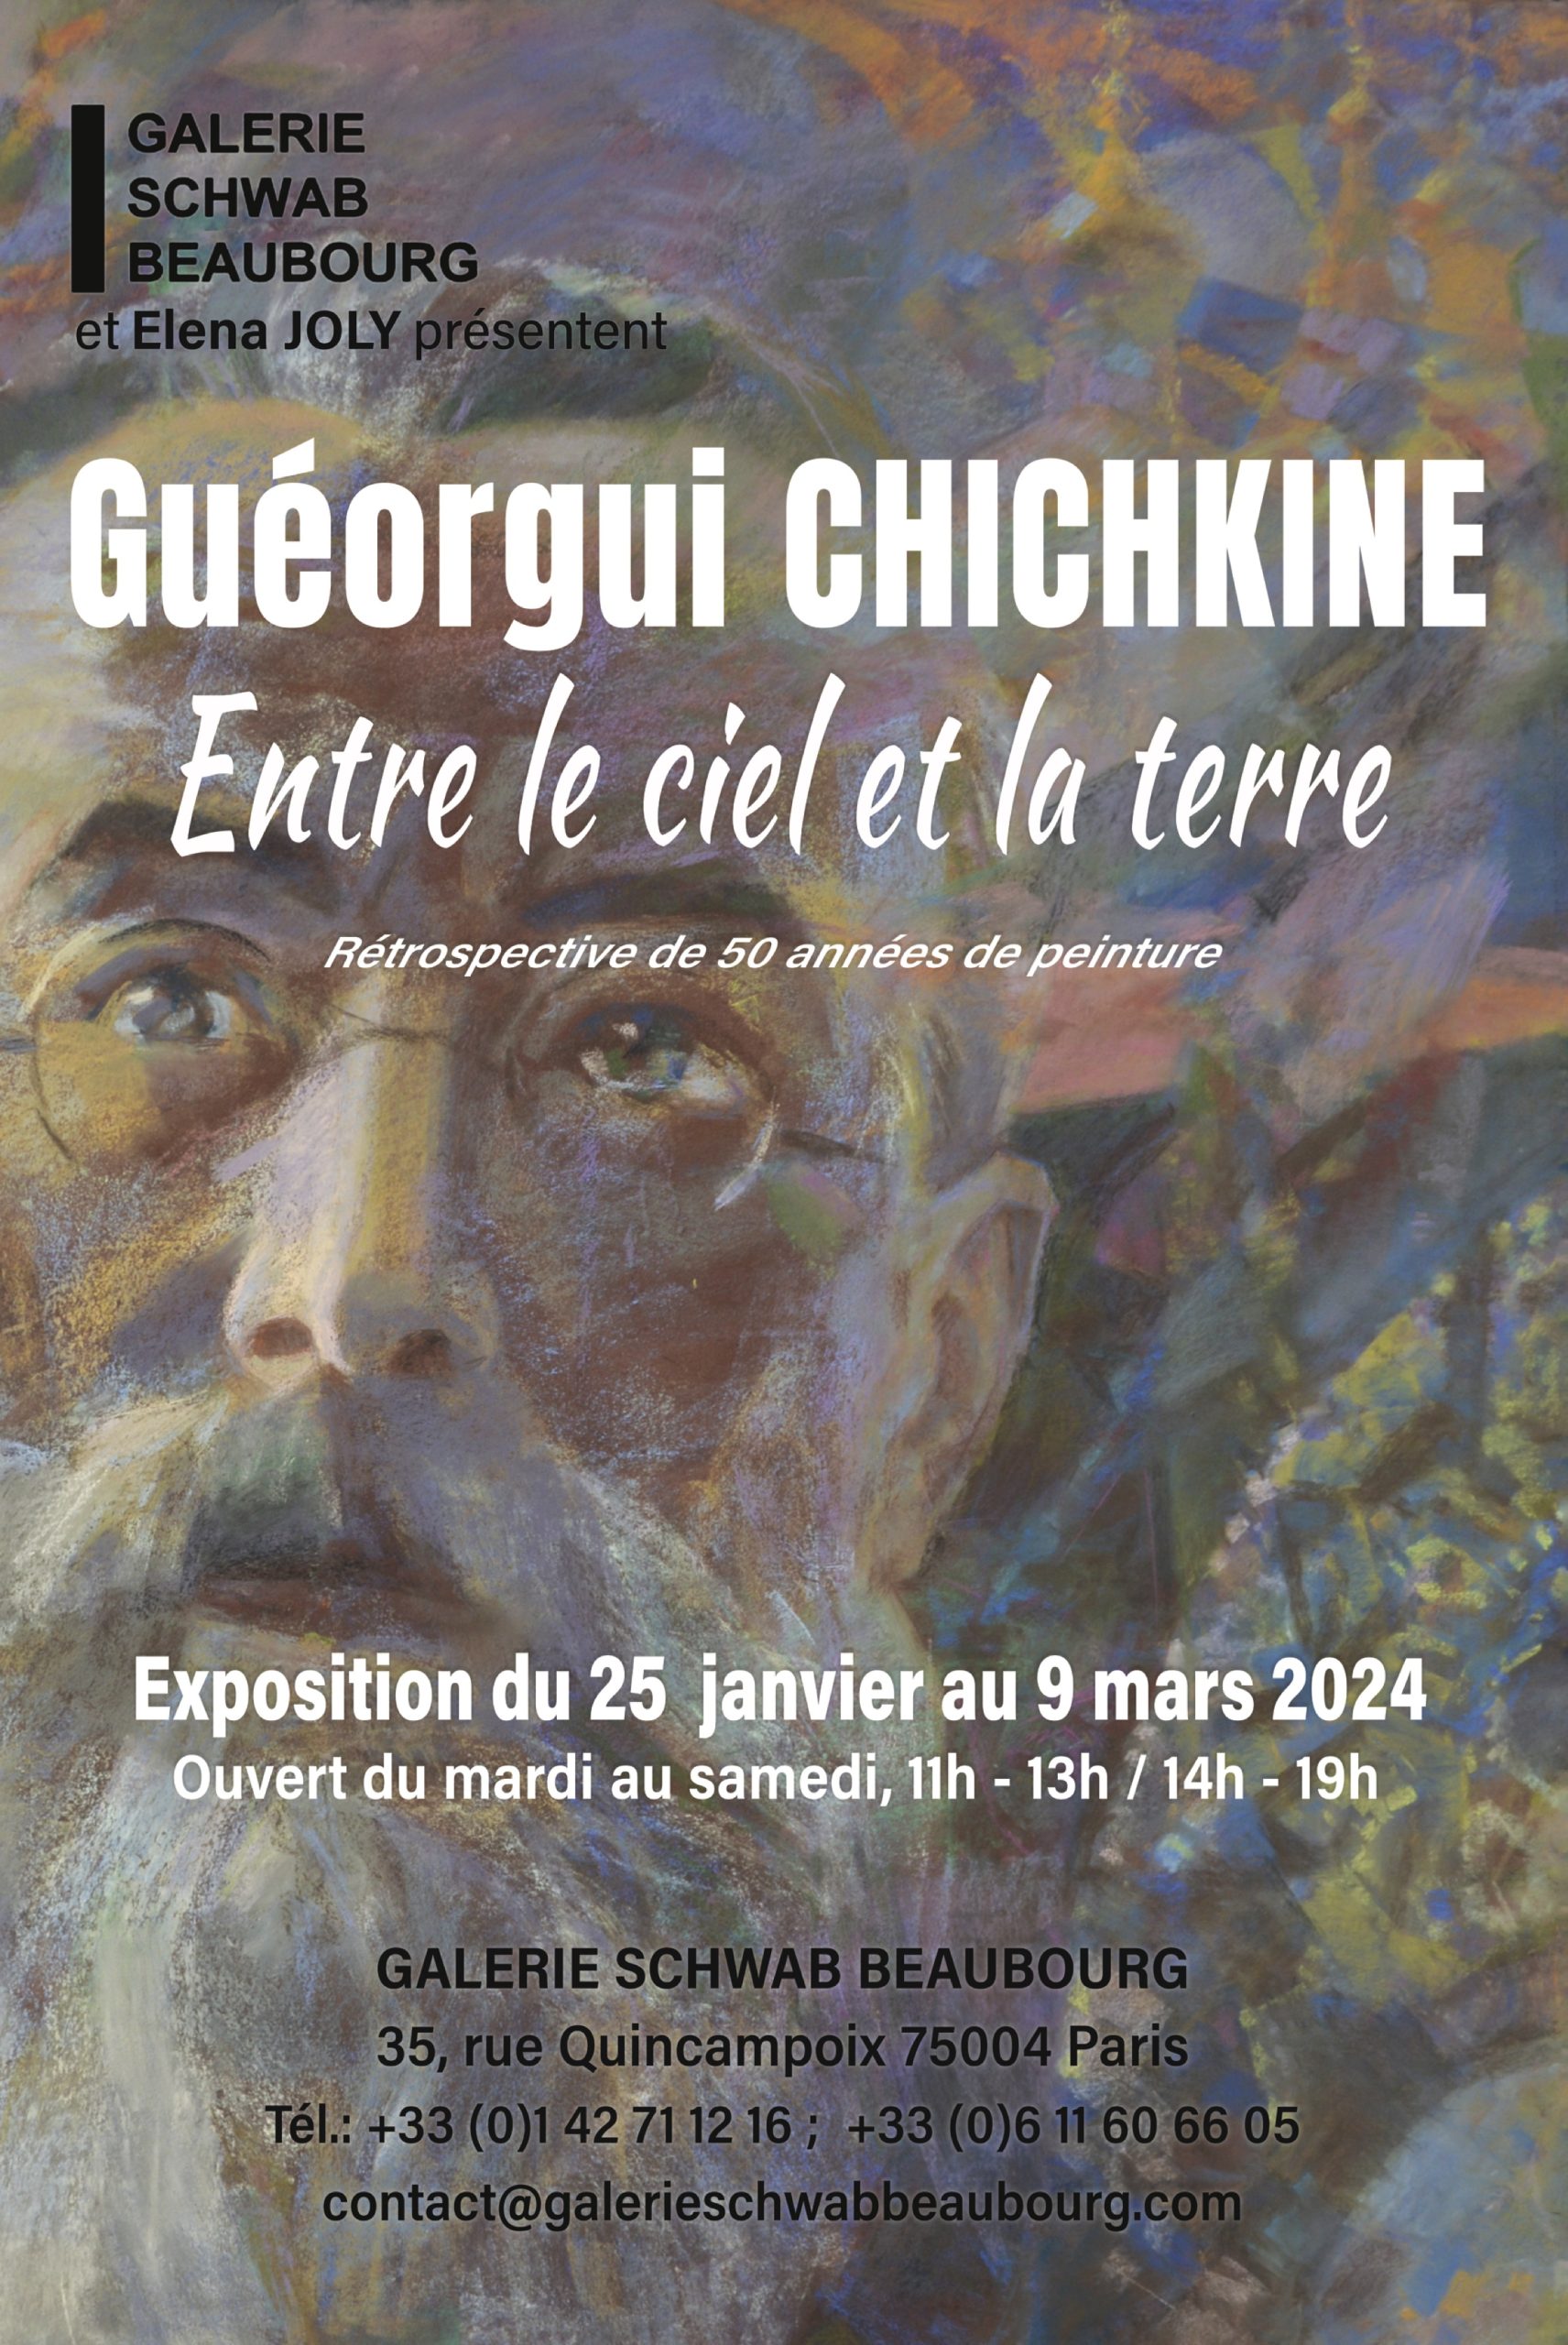 Выставка произведений Георгия Шишкина “Между небом и землёй” (“Entre le ciel et la terre”)